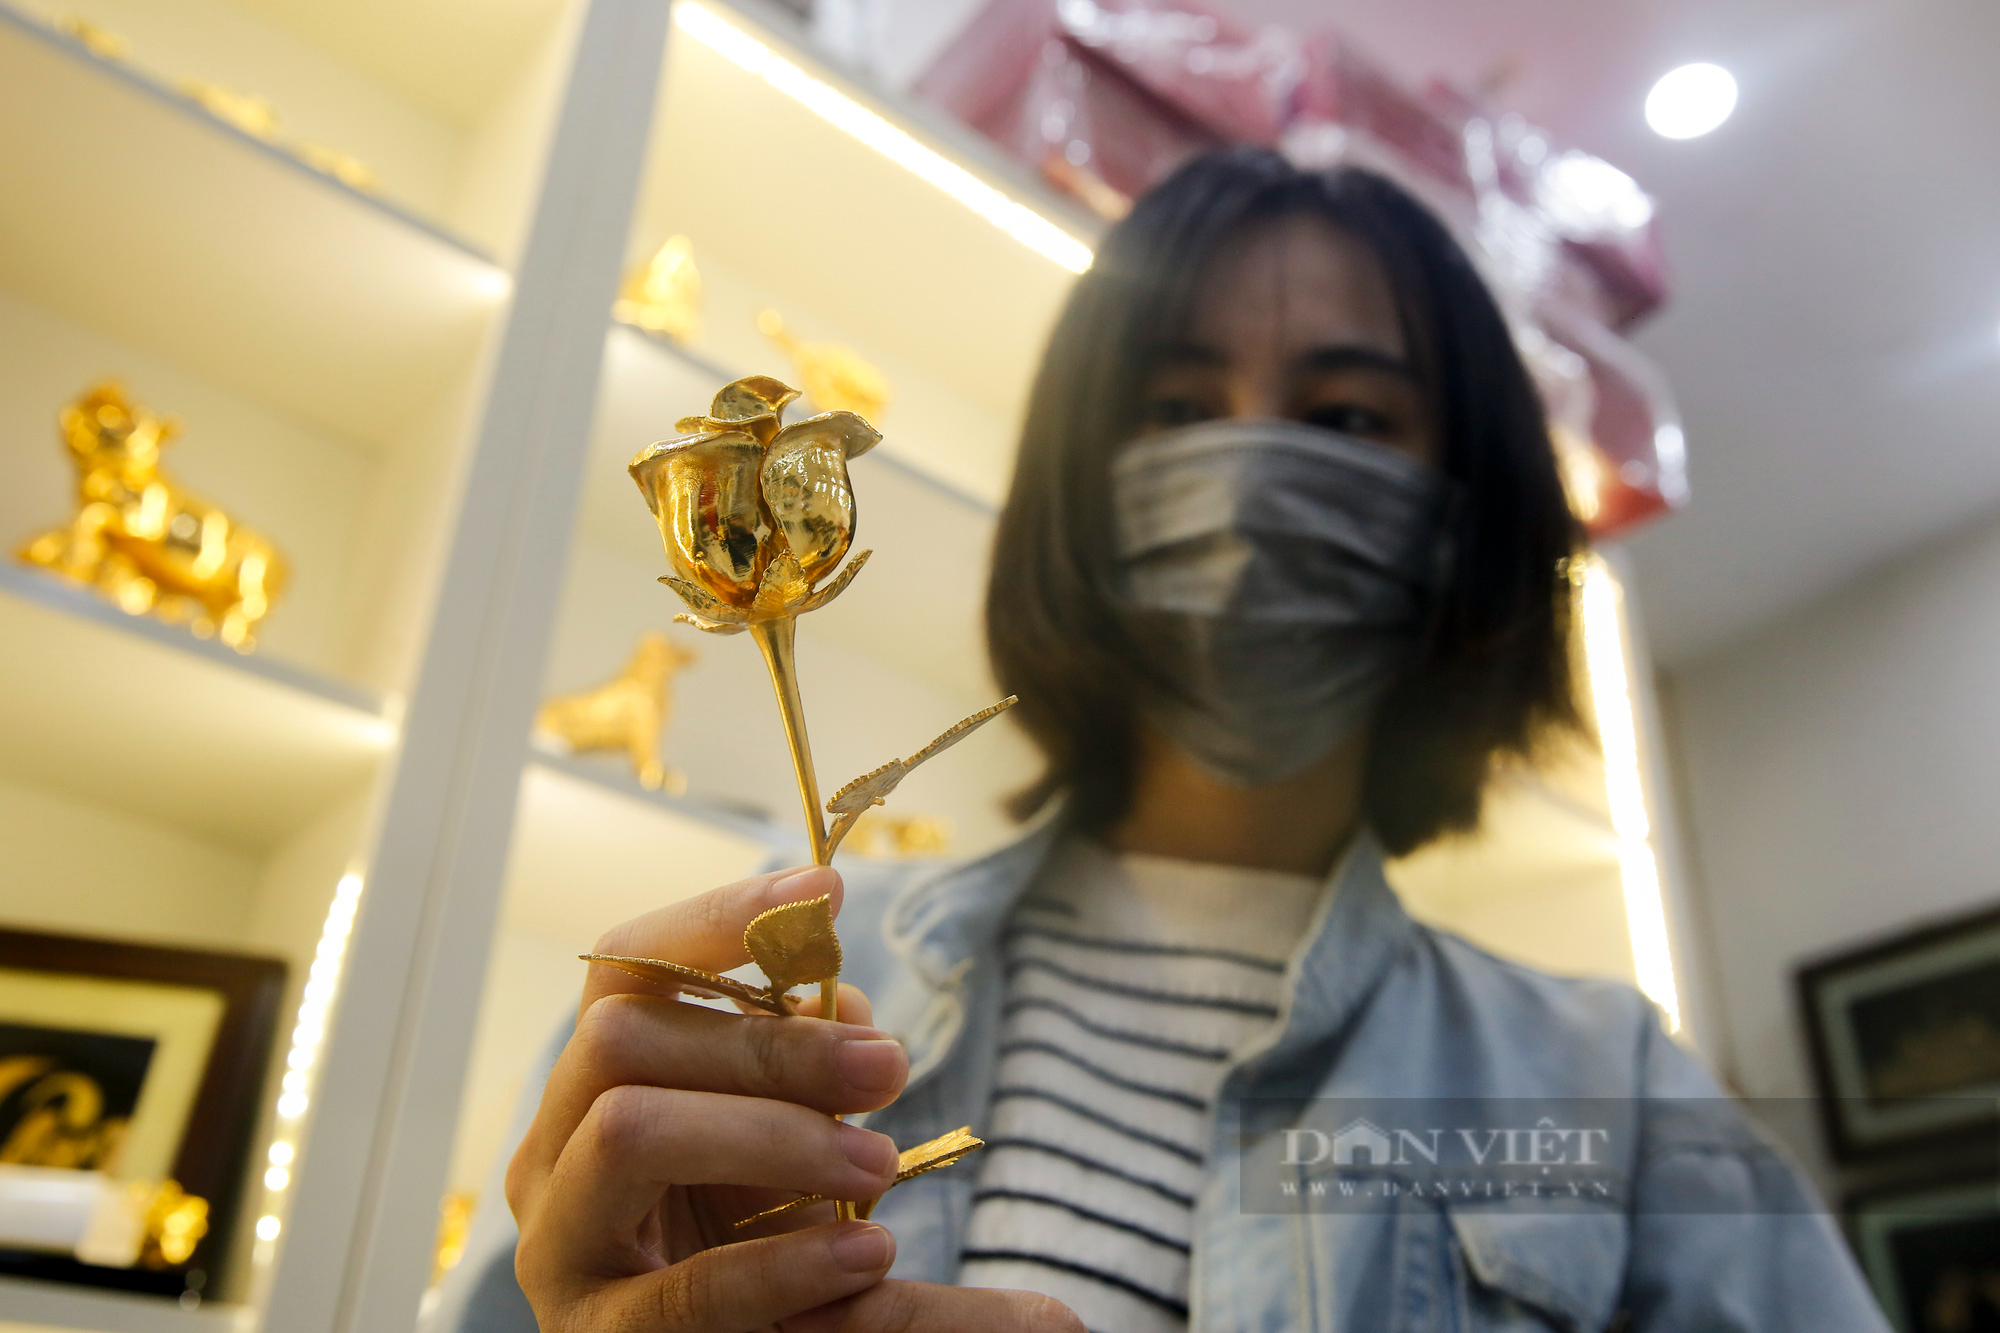 Sản phẩm dát vàng cực độc, cực đắt hút khách trước ngày Phụ nữ Việt Nam 20/10 - Ảnh 10.